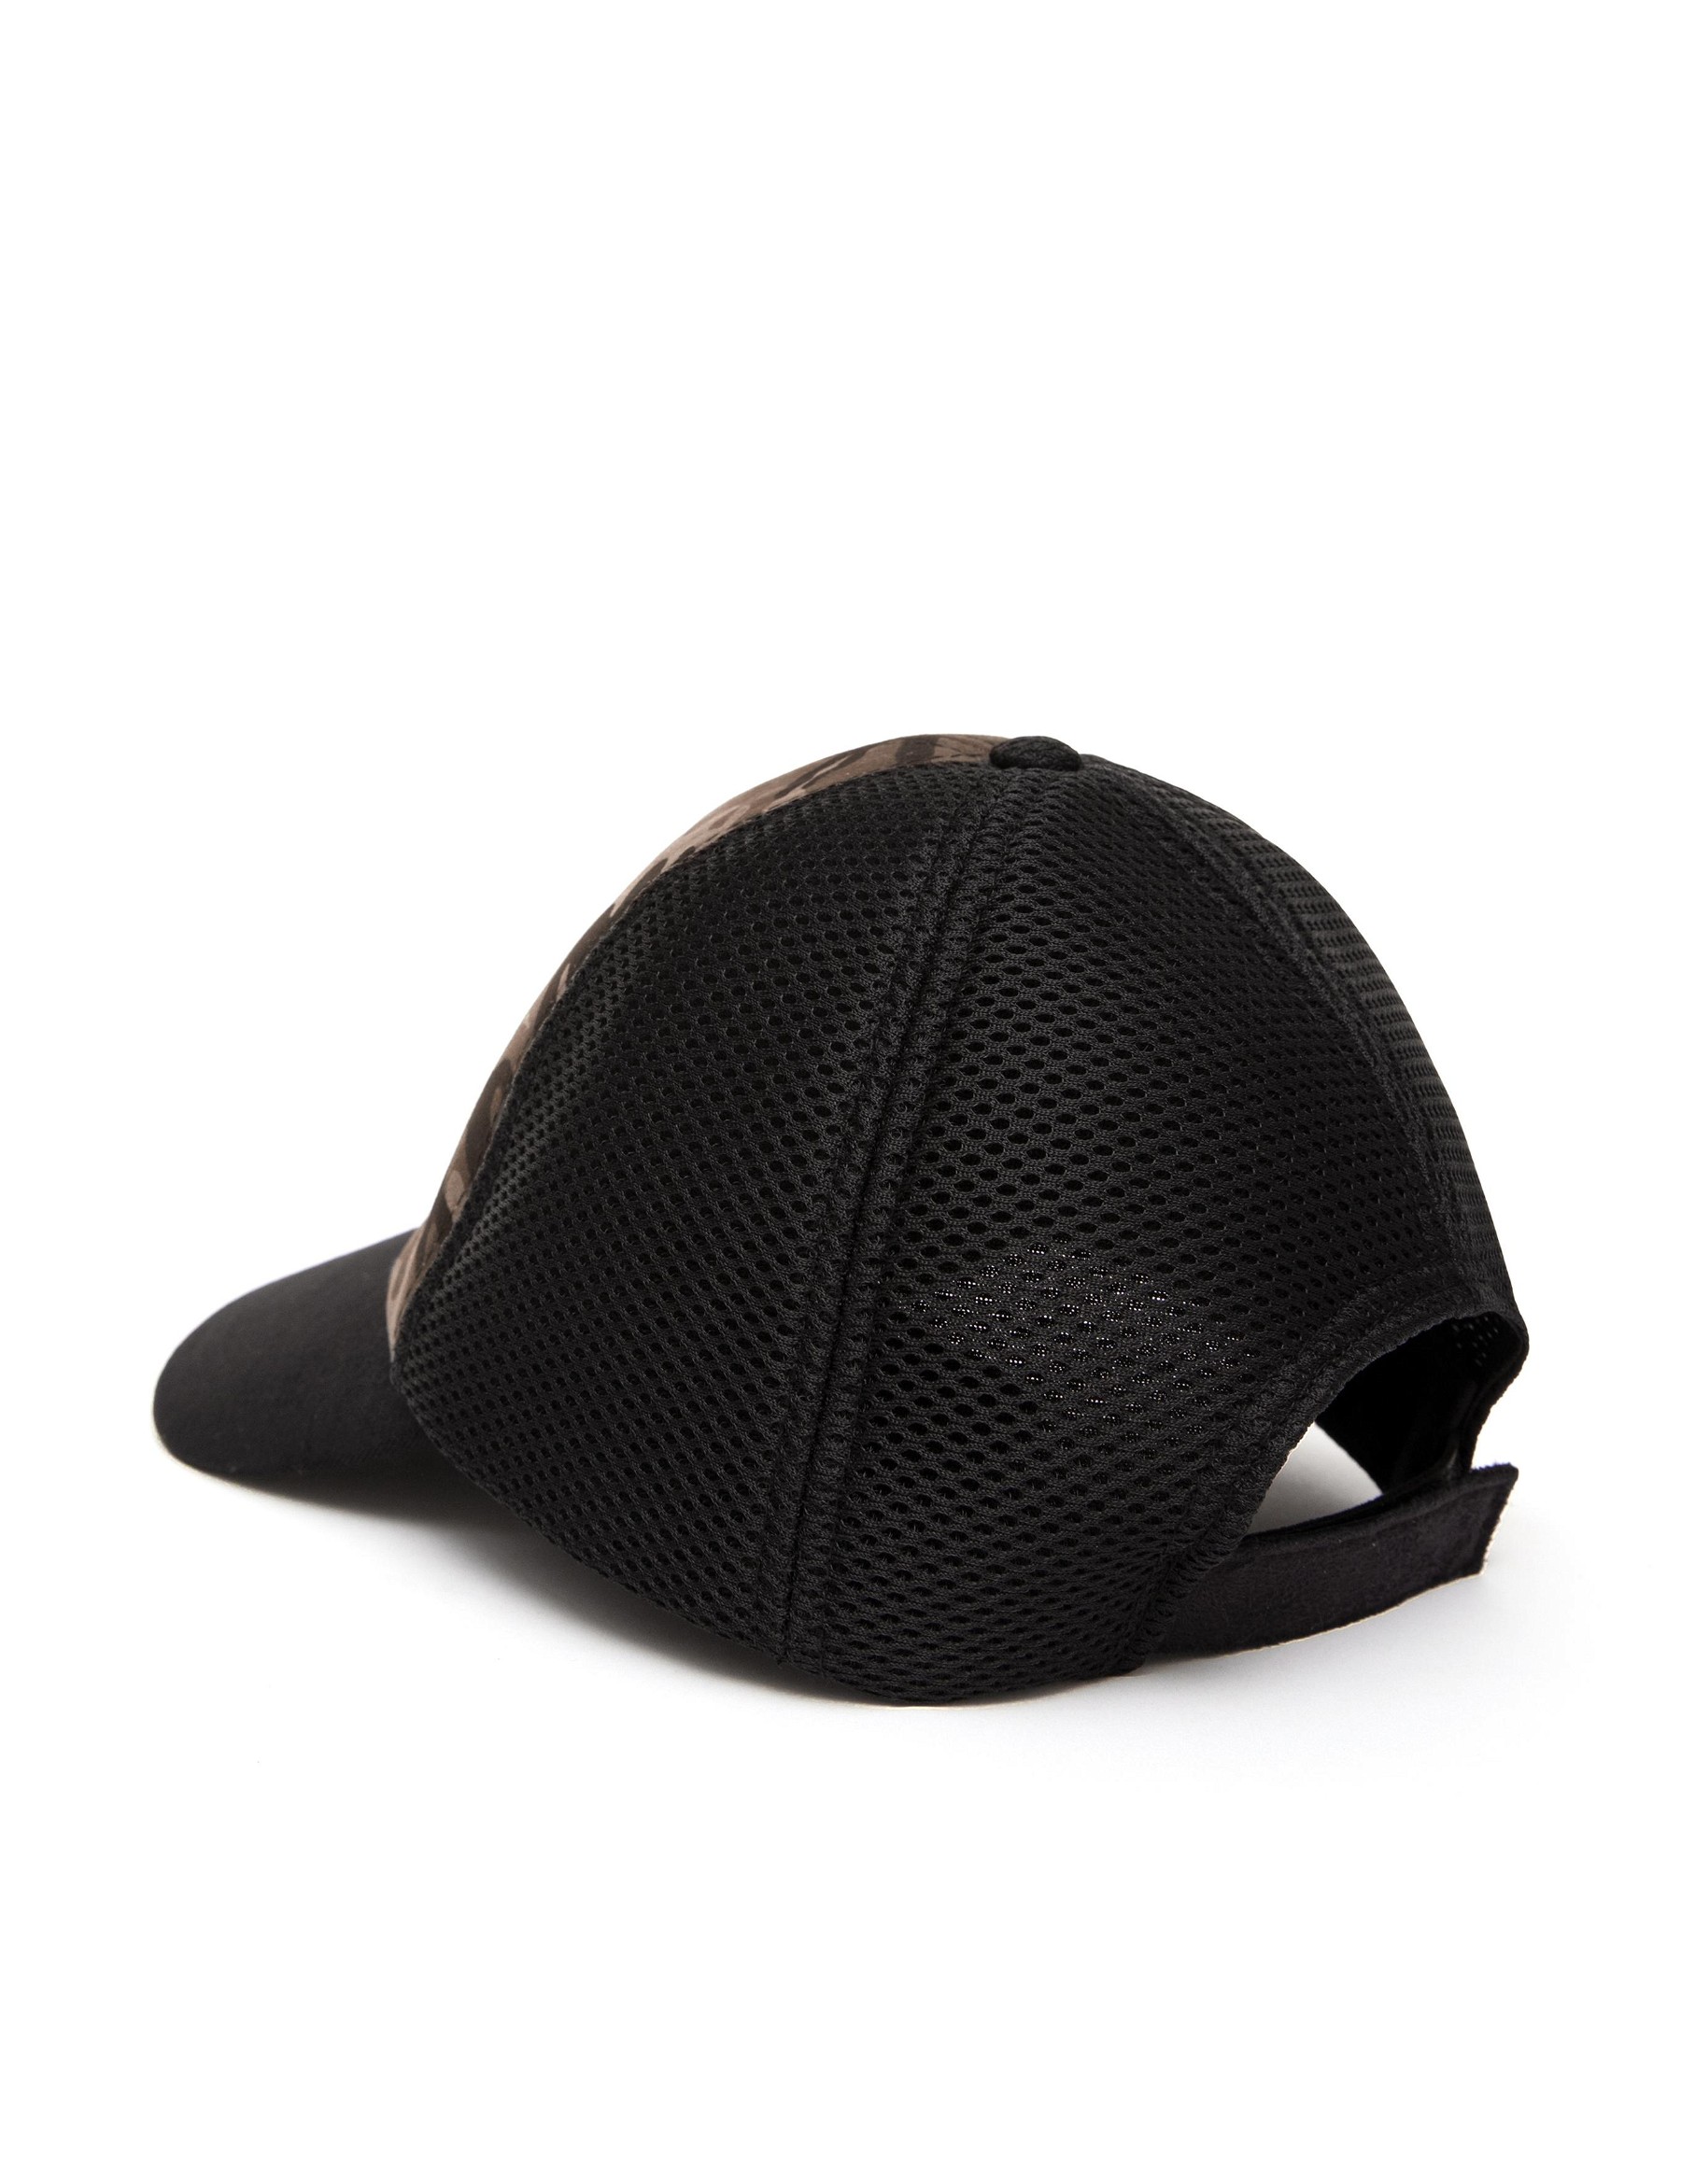 Siyah Kamuflaj Şapka